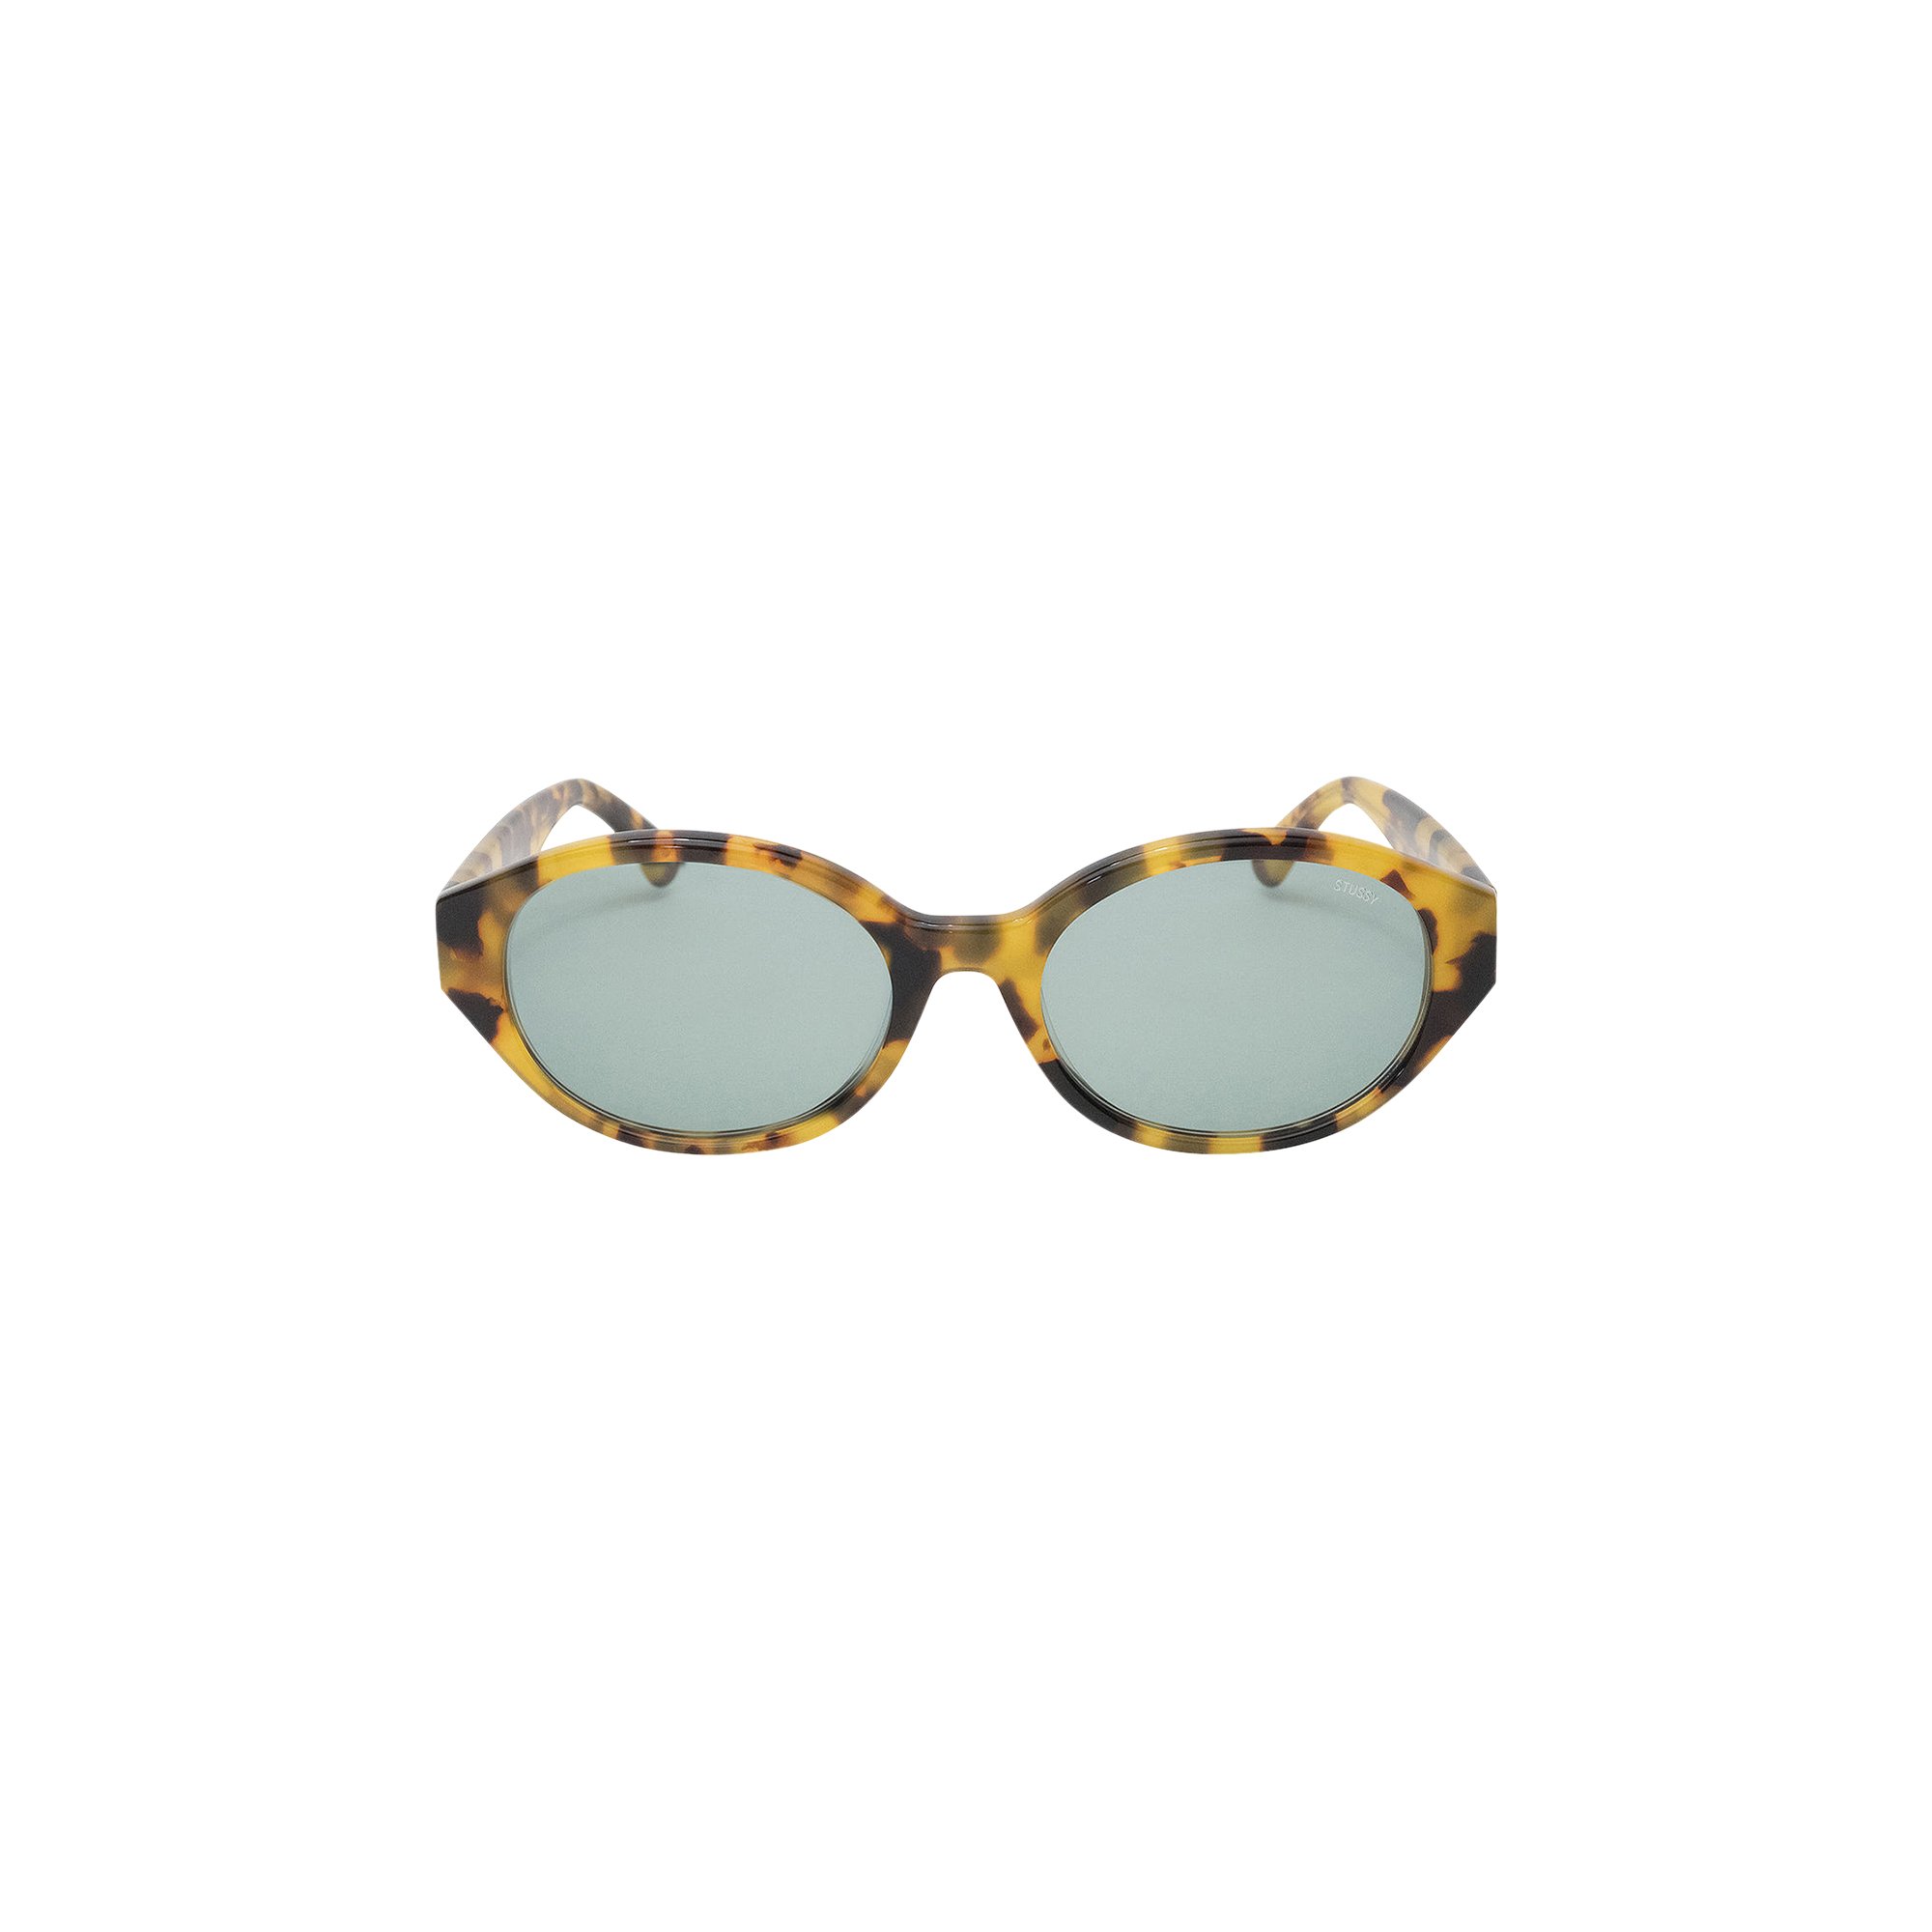 Buy Stussy Penn Sunglasses 'Tortoise' - 338209 TORT | GOAT